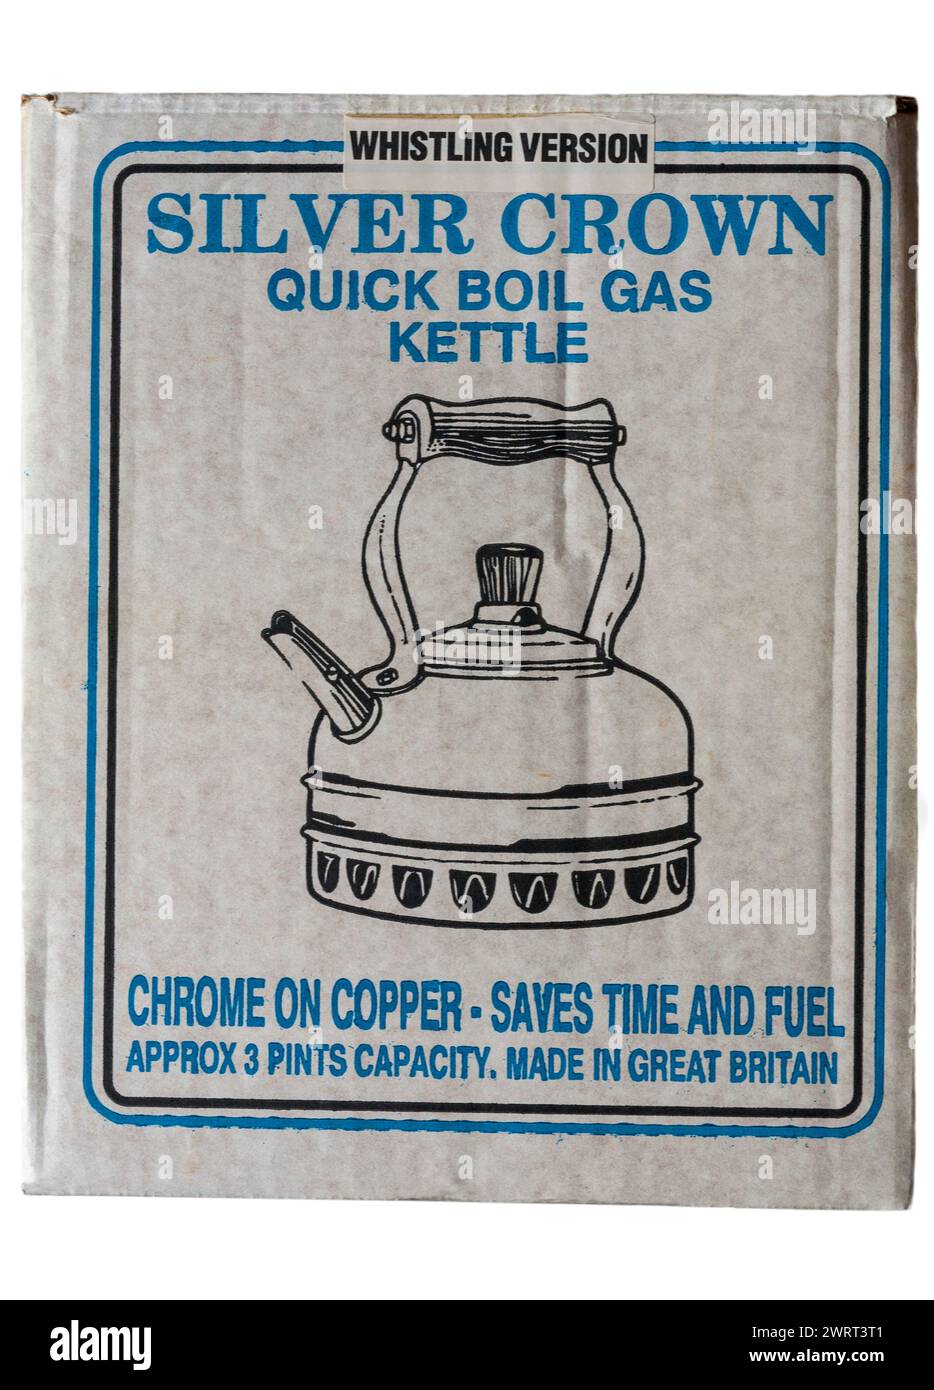 Silver Crown schnell kochender Gaskocher mit Pfeifversion Chrom auf Kupfer spart Zeit und Kraftstoff in Box isoliert auf weißem Hintergrund Stockfoto